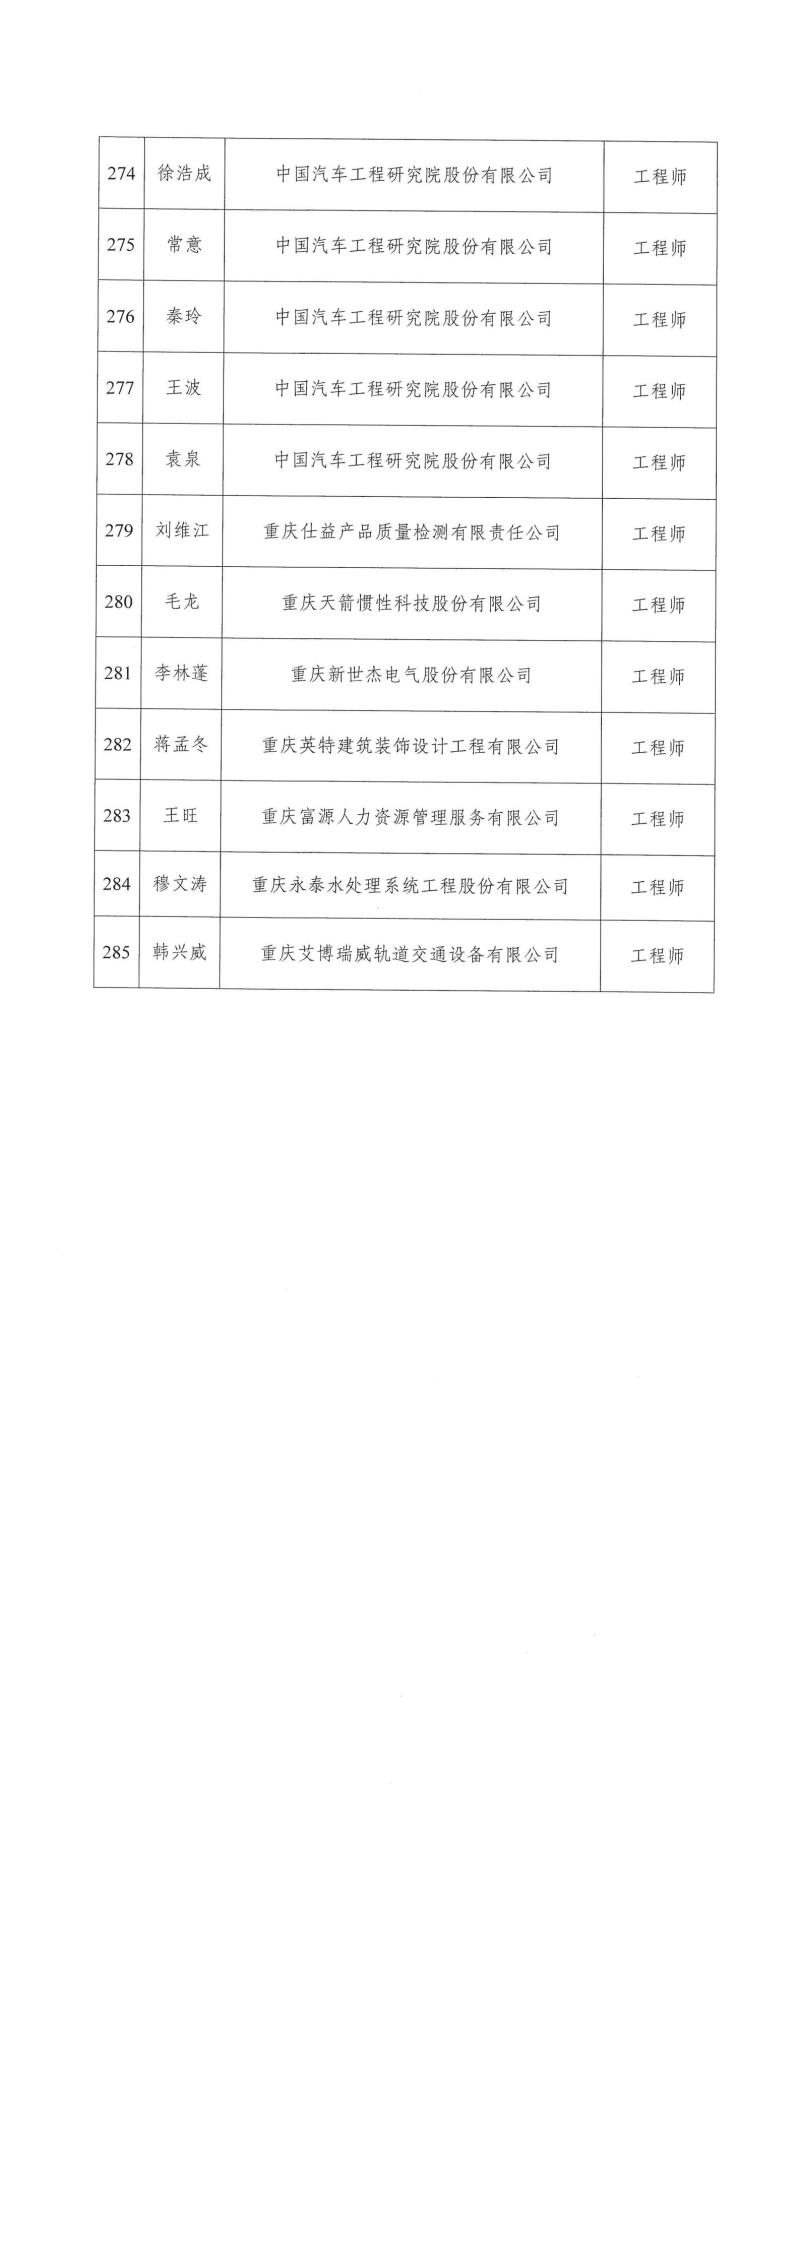 2023年重庆市工程技术机械电气专业中初级职称评审通过人员公示_02.jpg